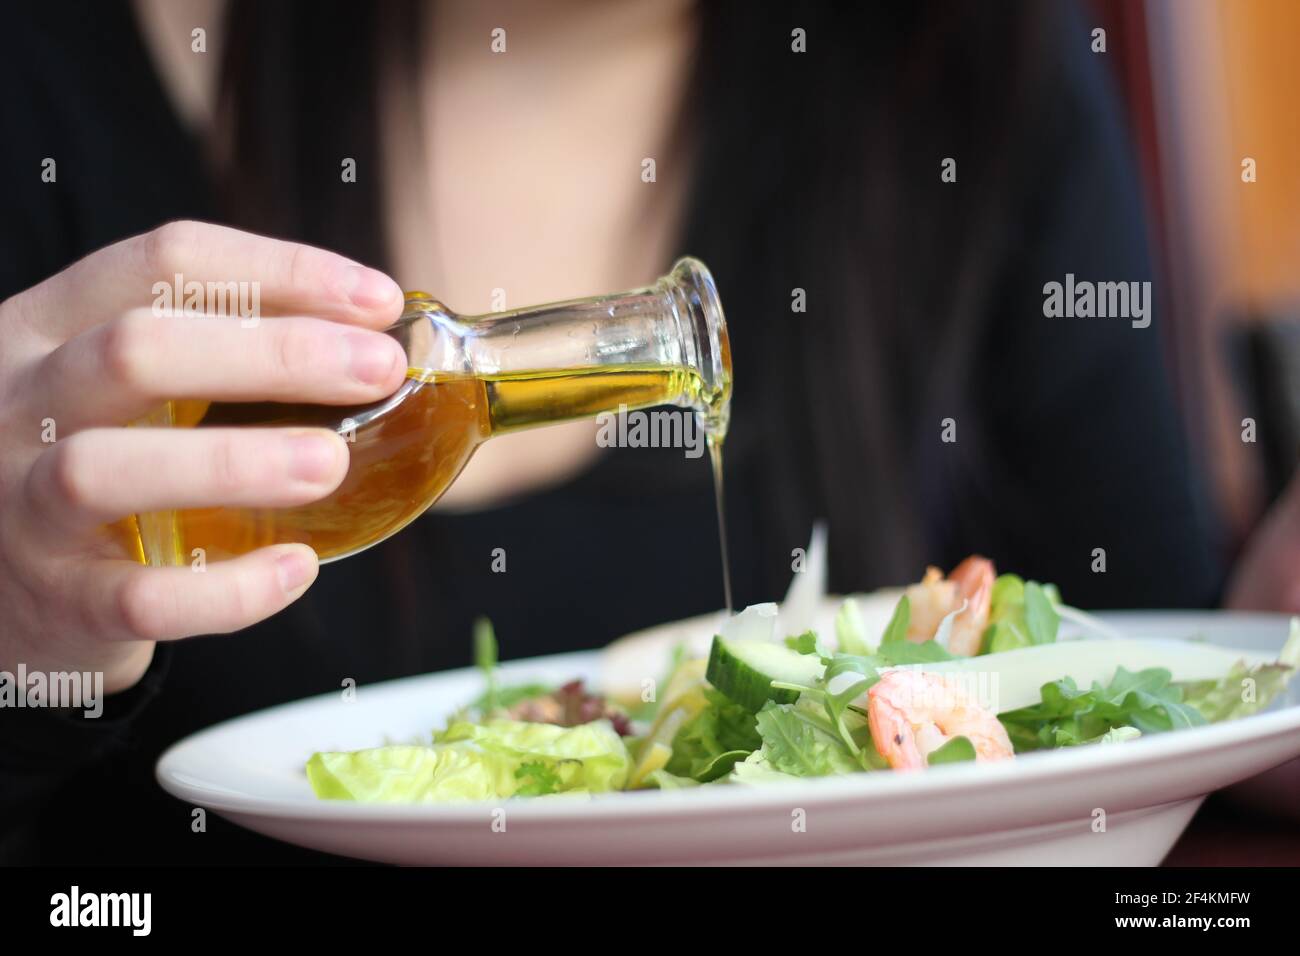 Cibo da ristorante con ingredienti freschi - insalata con gamberi, parmigiano e olio d'oliva che scorre Foto Stock